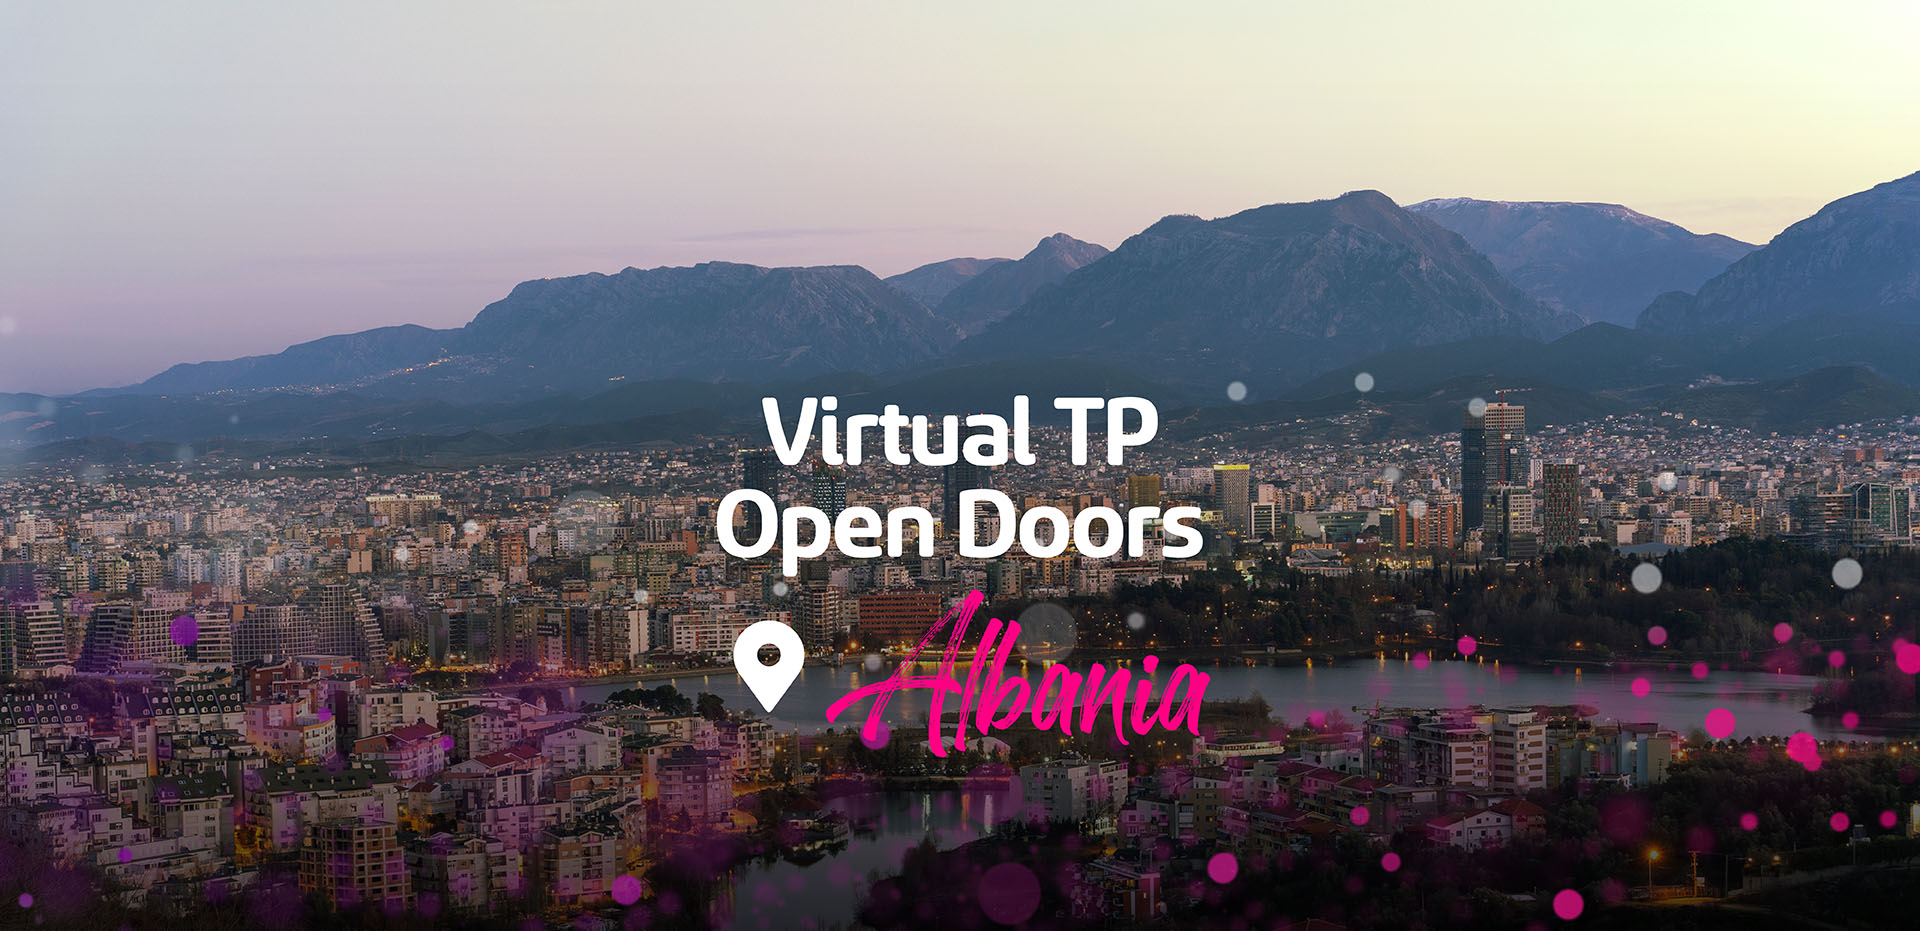 GMT Website Banner Opendoors Albania 01 (2)